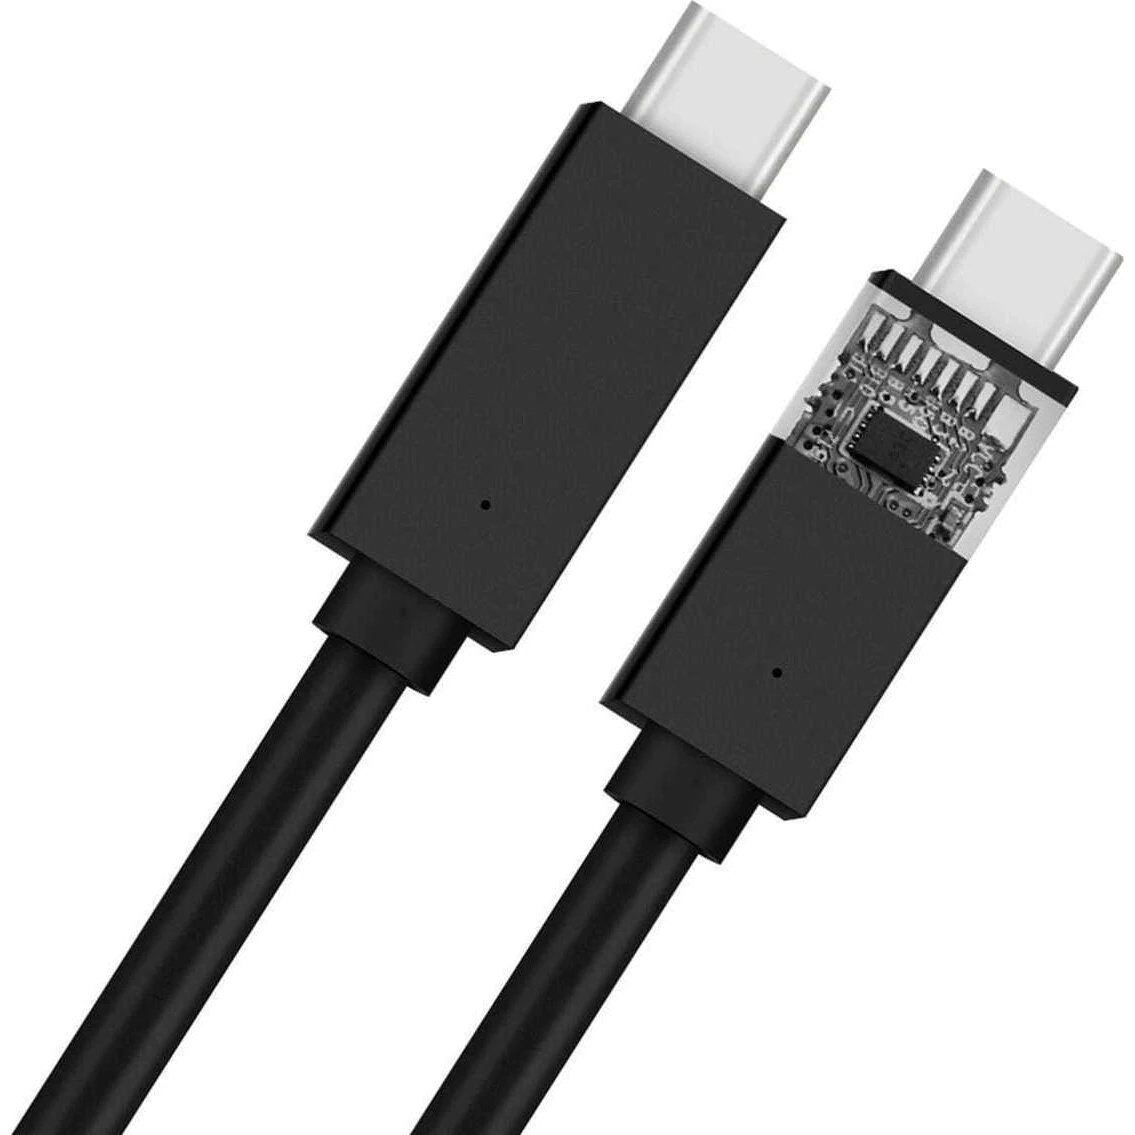 Usb c 5a. Кабель gal USB A_Type-c,2a, плоский,1,5м. Joyroom s-cc100a20, Type-c - Type-c, 100w, 2м, черный. Дата-кабель USB-C - USB-C, 100w, 5a, 1.5м, белый, deppa. Кабель USB - Type-c BC (5a) белый.